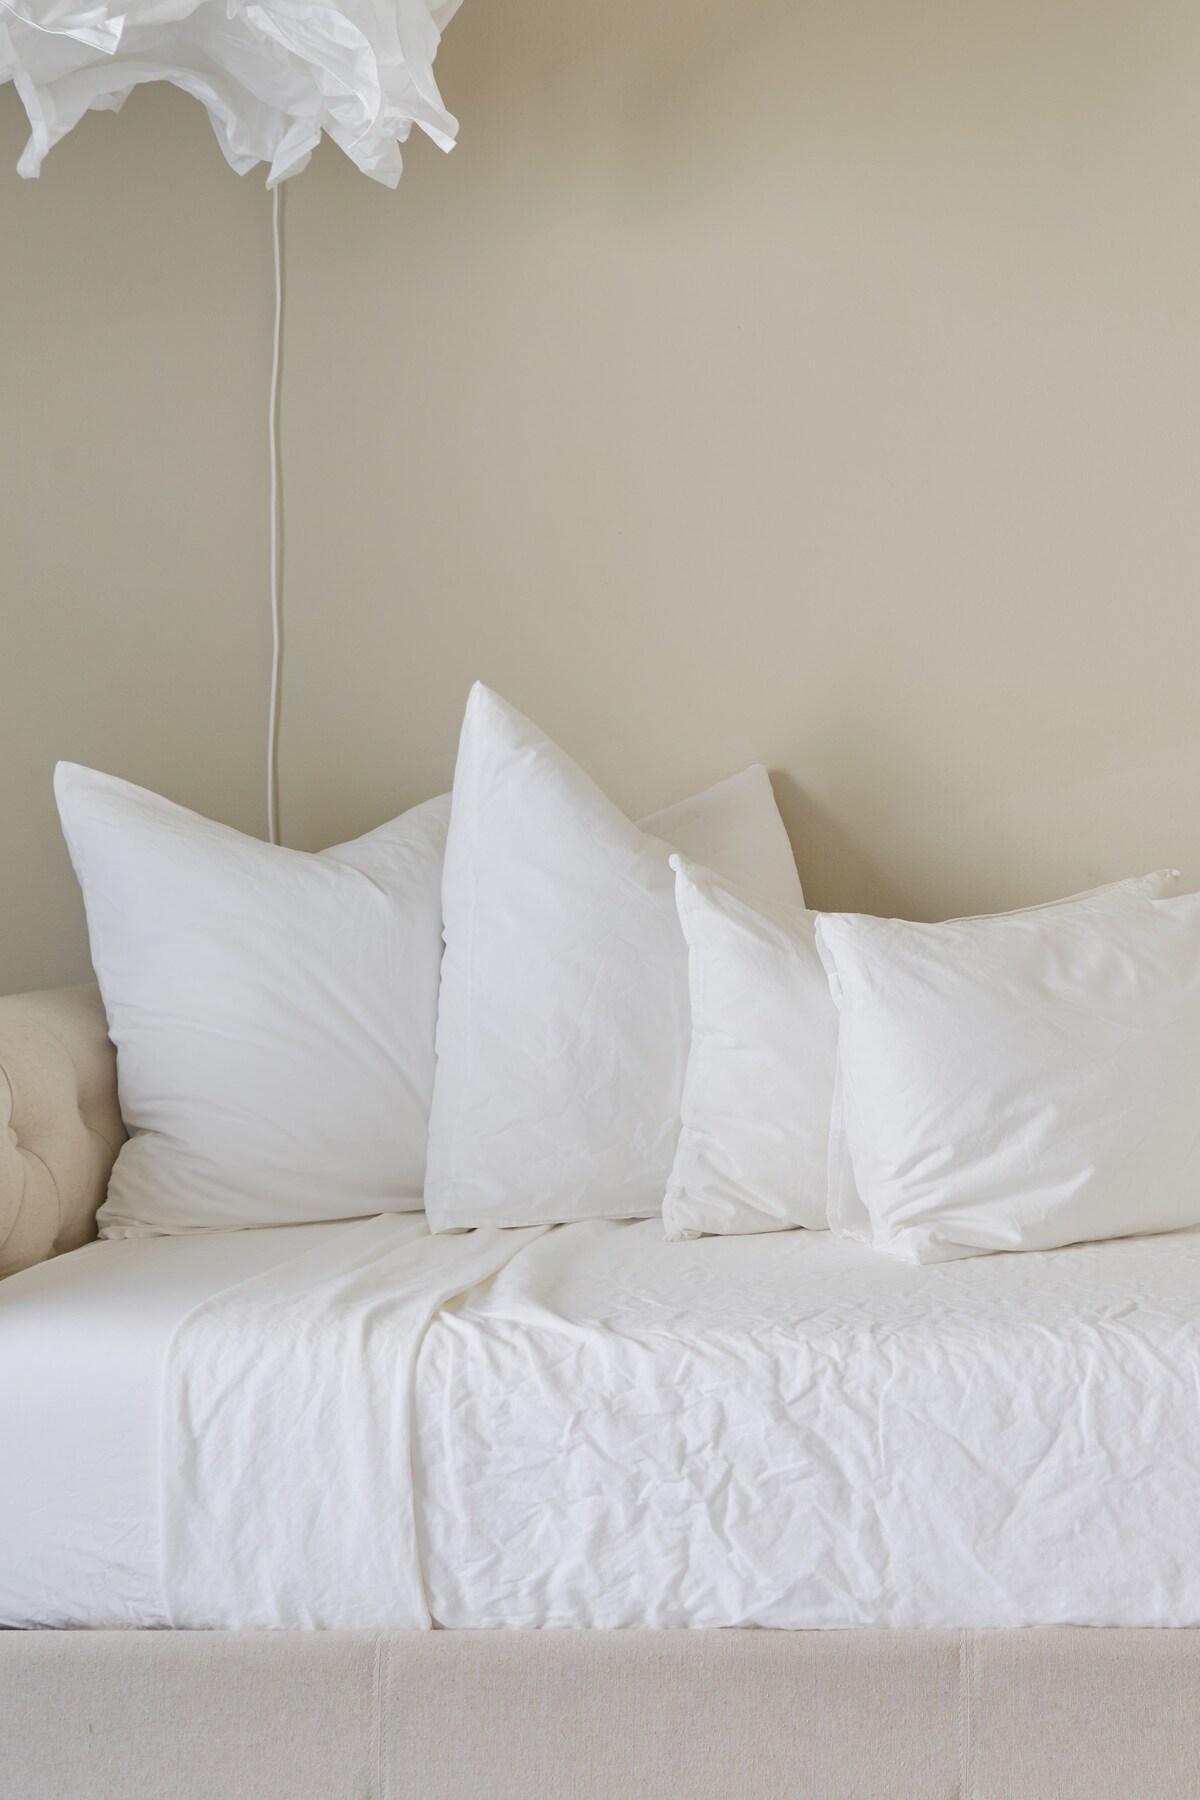 Sonesta Decorative Pillows  Shop Bedding, Linens and all Pillows